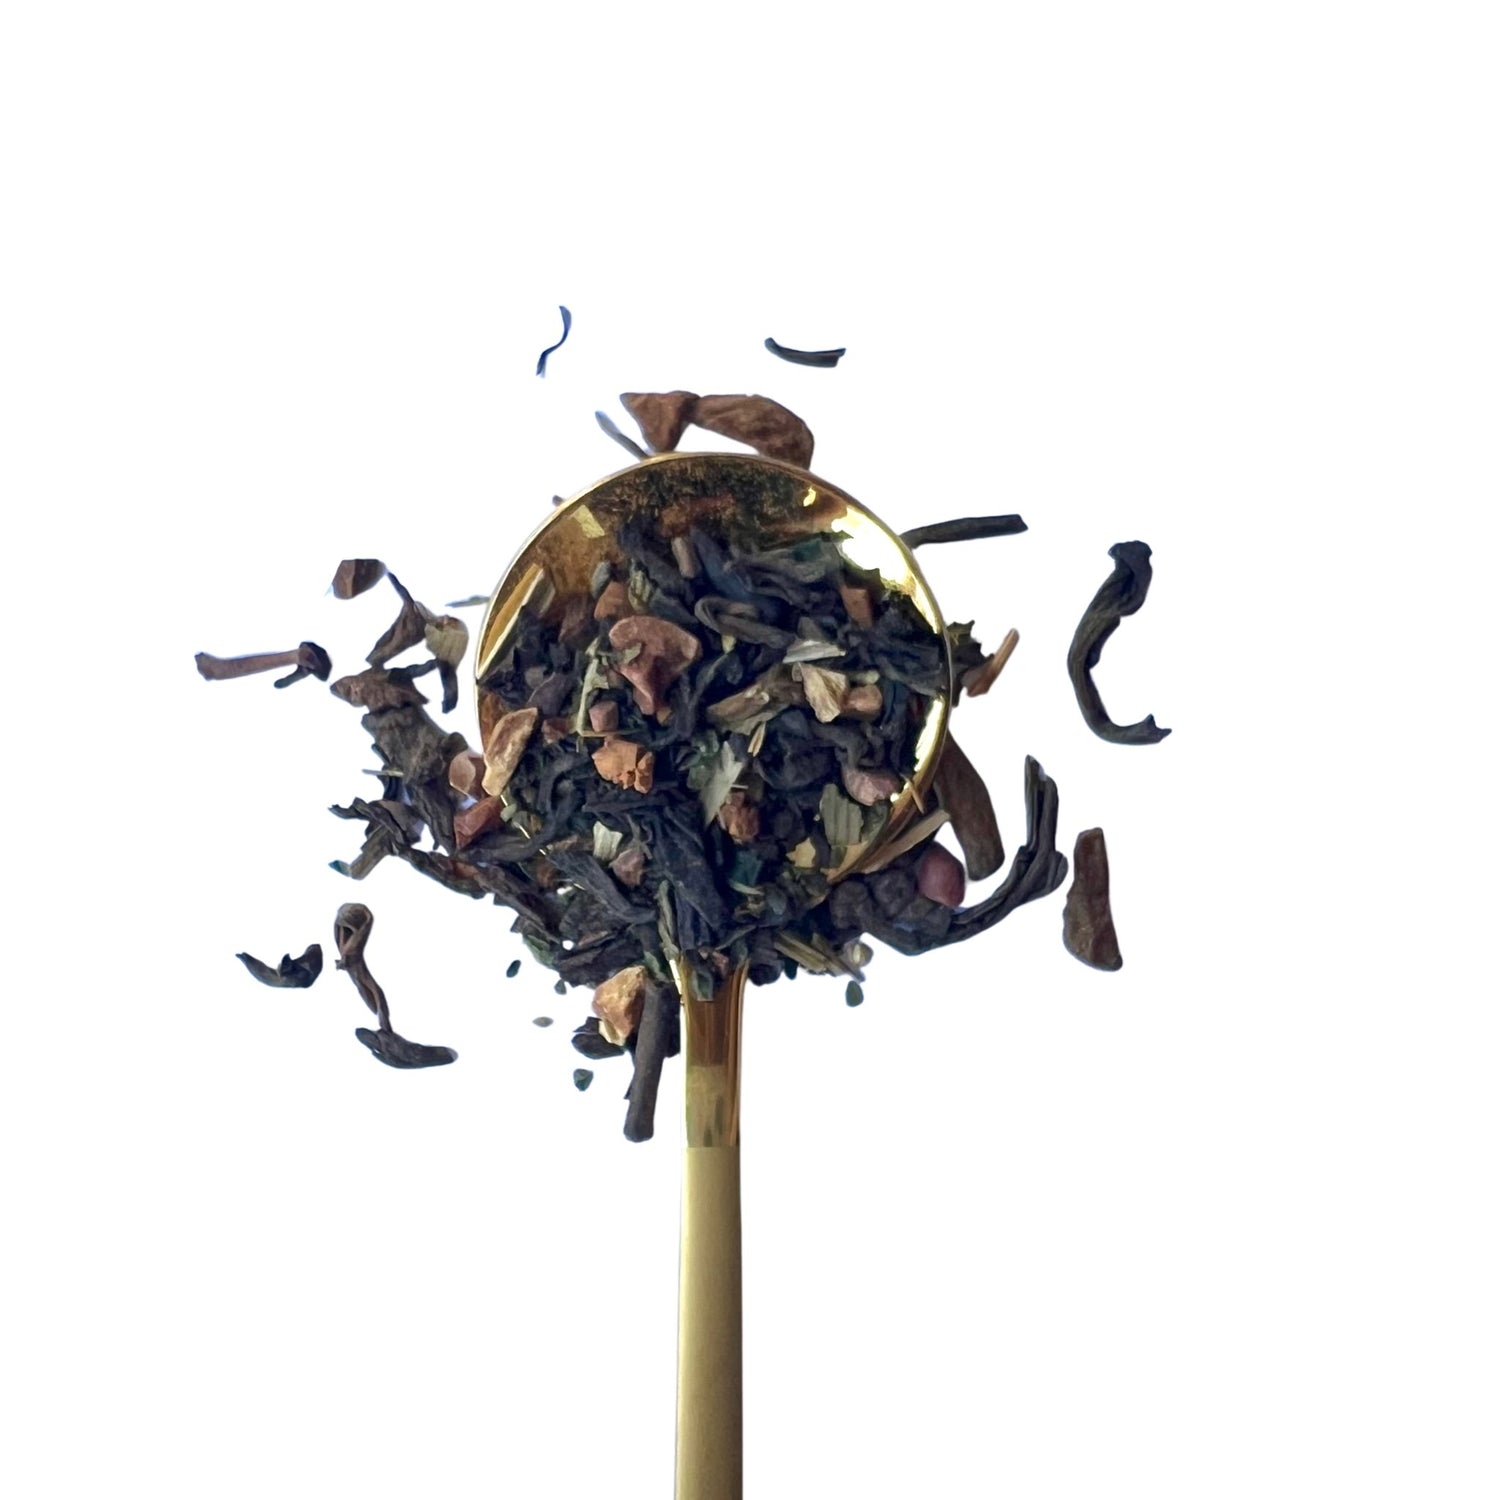 Gut Balance Tea - Loose Leaf Tea Market